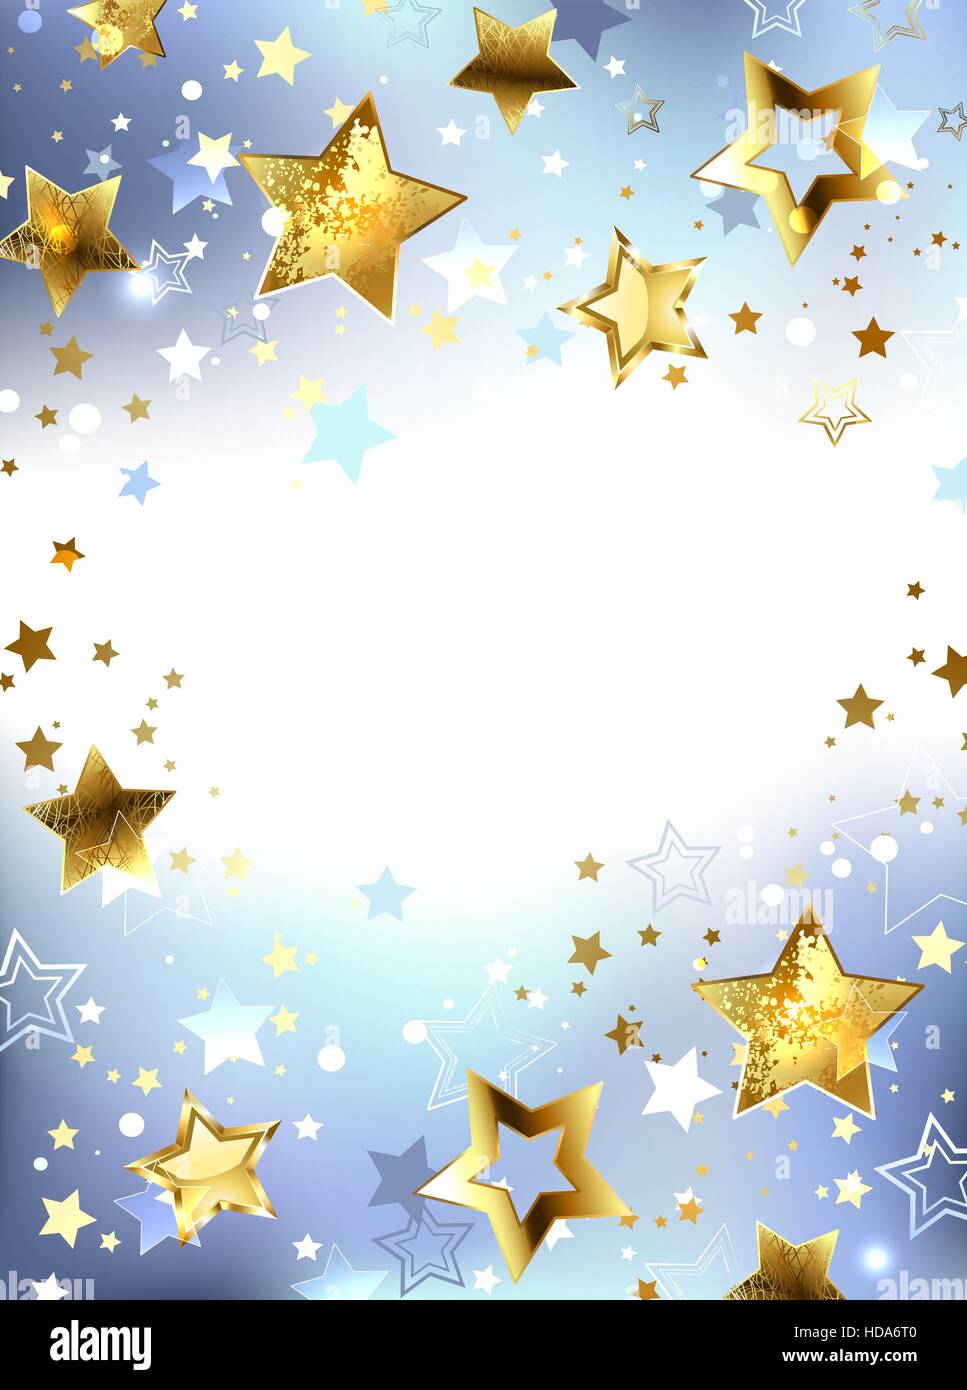 Golden glänzende Sterne auf hellen abstrakten Hintergrund. Entwerfen Sie mit Sternen. Goldener Stern. Stock Vektor